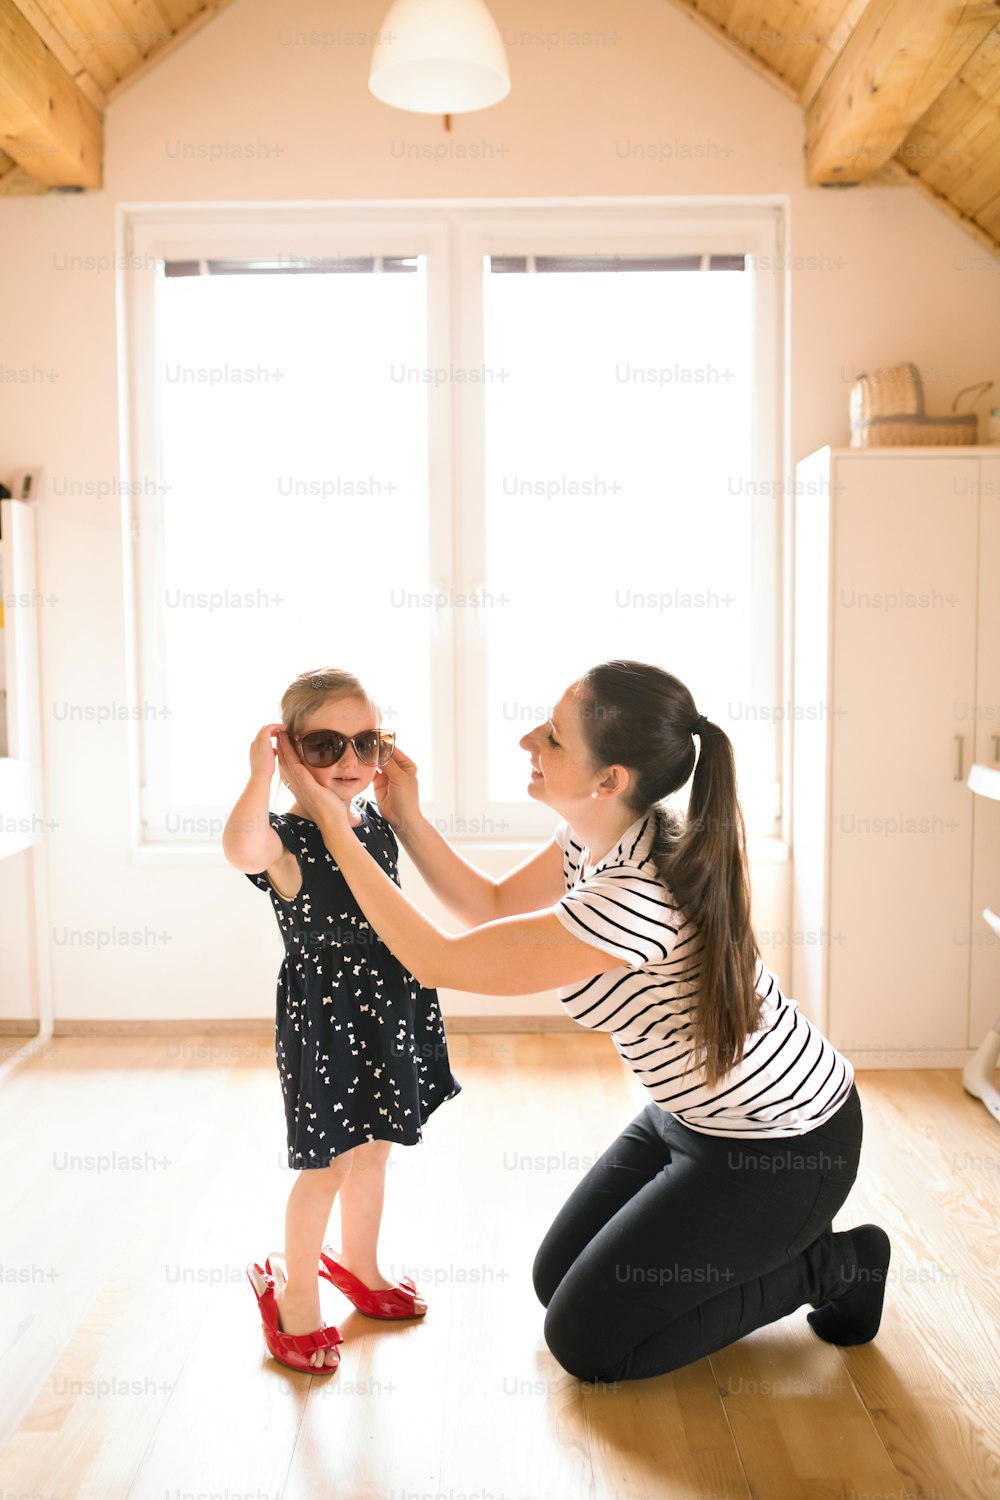 La hermosa y joven madre se pone gafas de sol a su linda hijita.